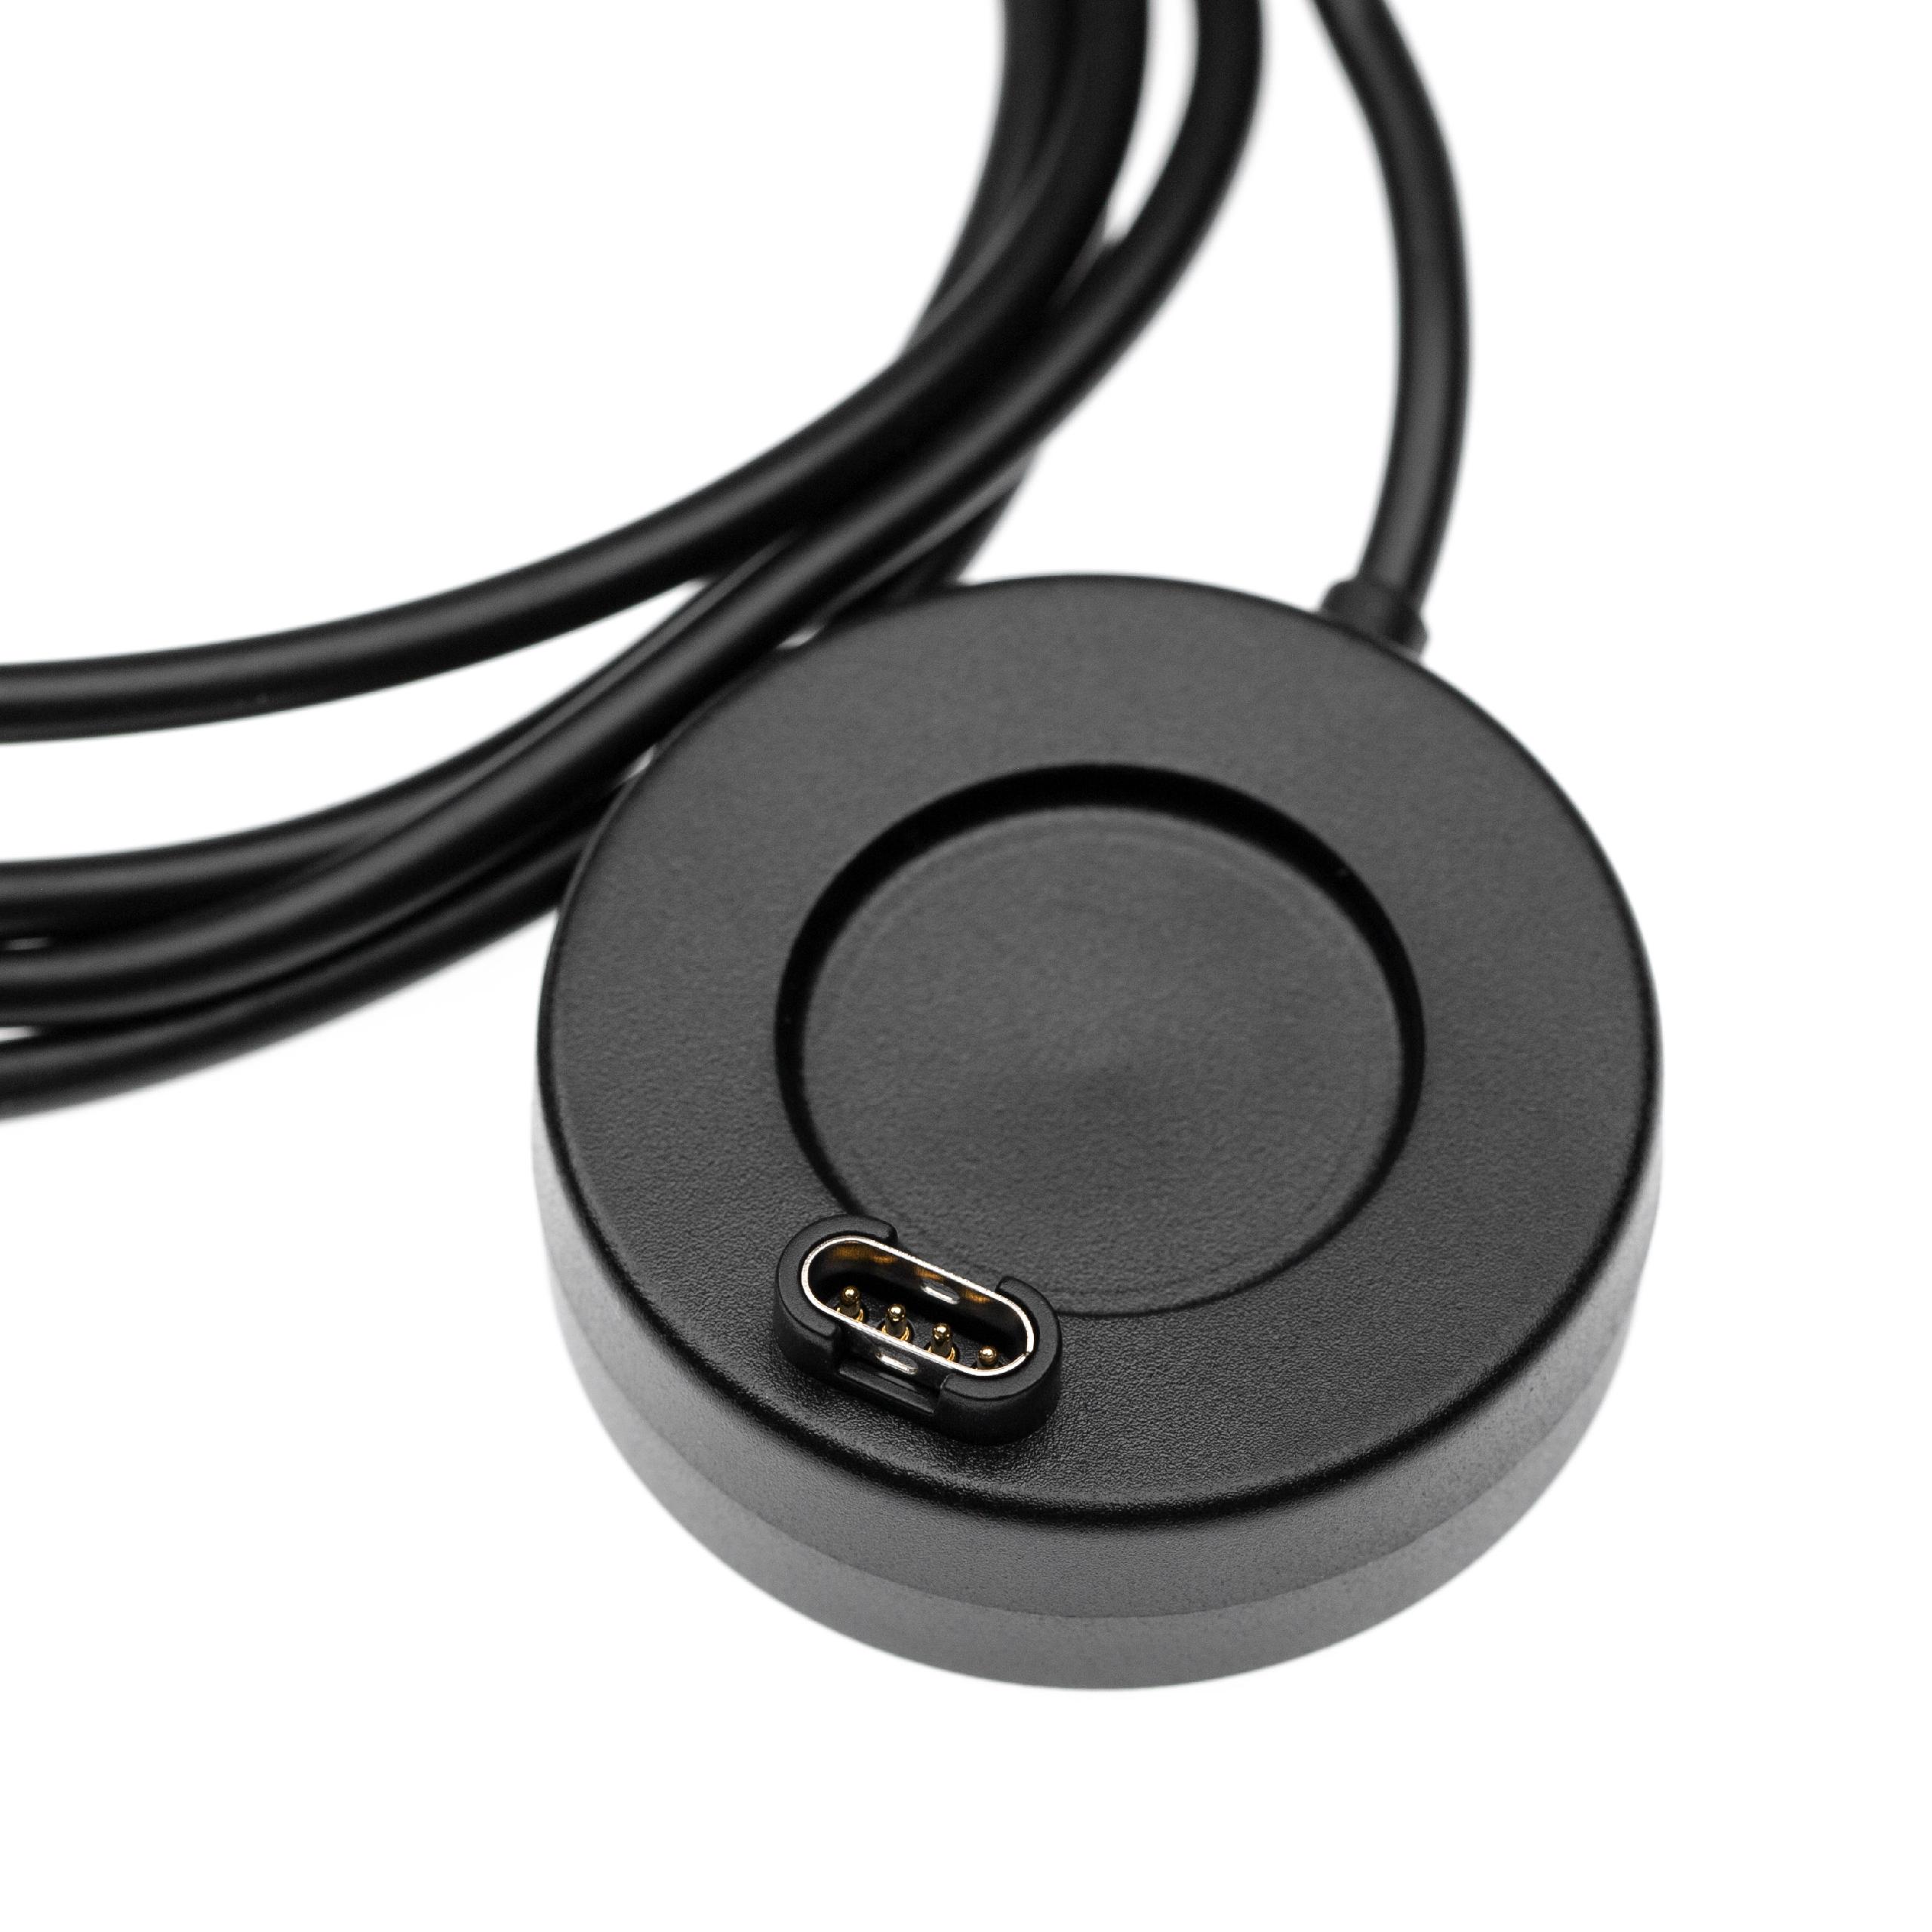 Cable de carga USB 2.0-A para smartwatch Garmin Vivoactive 3 - negro 100 cm